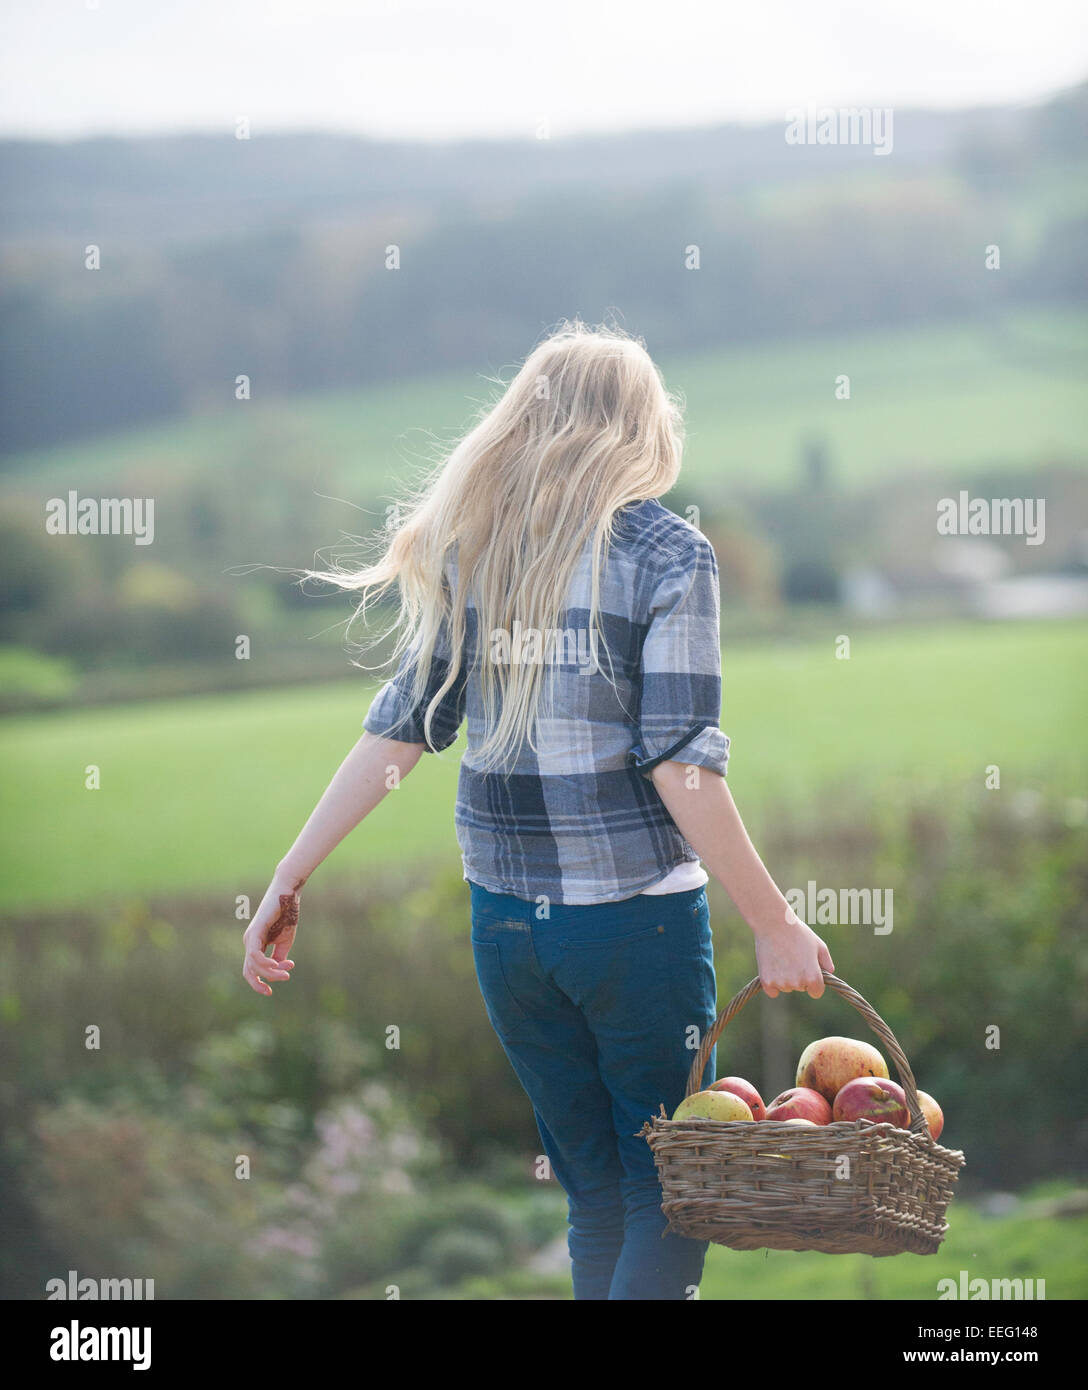 Une jeune fille la collecte des pommes sur une ferme. Banque D'Images